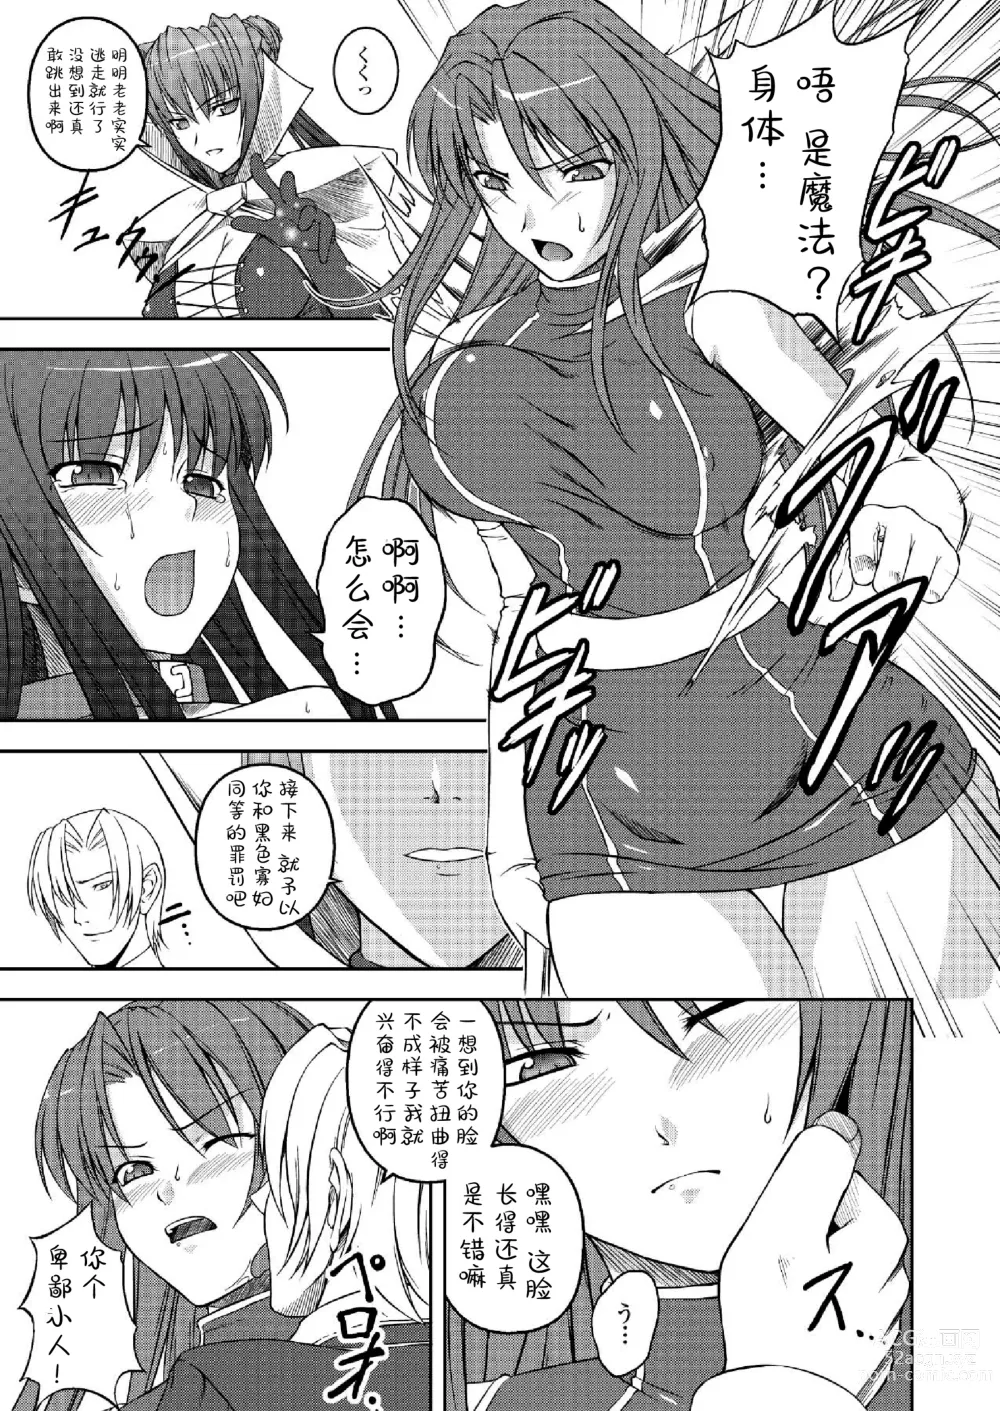 Page 137 of manga Ryoujoku no Rensa